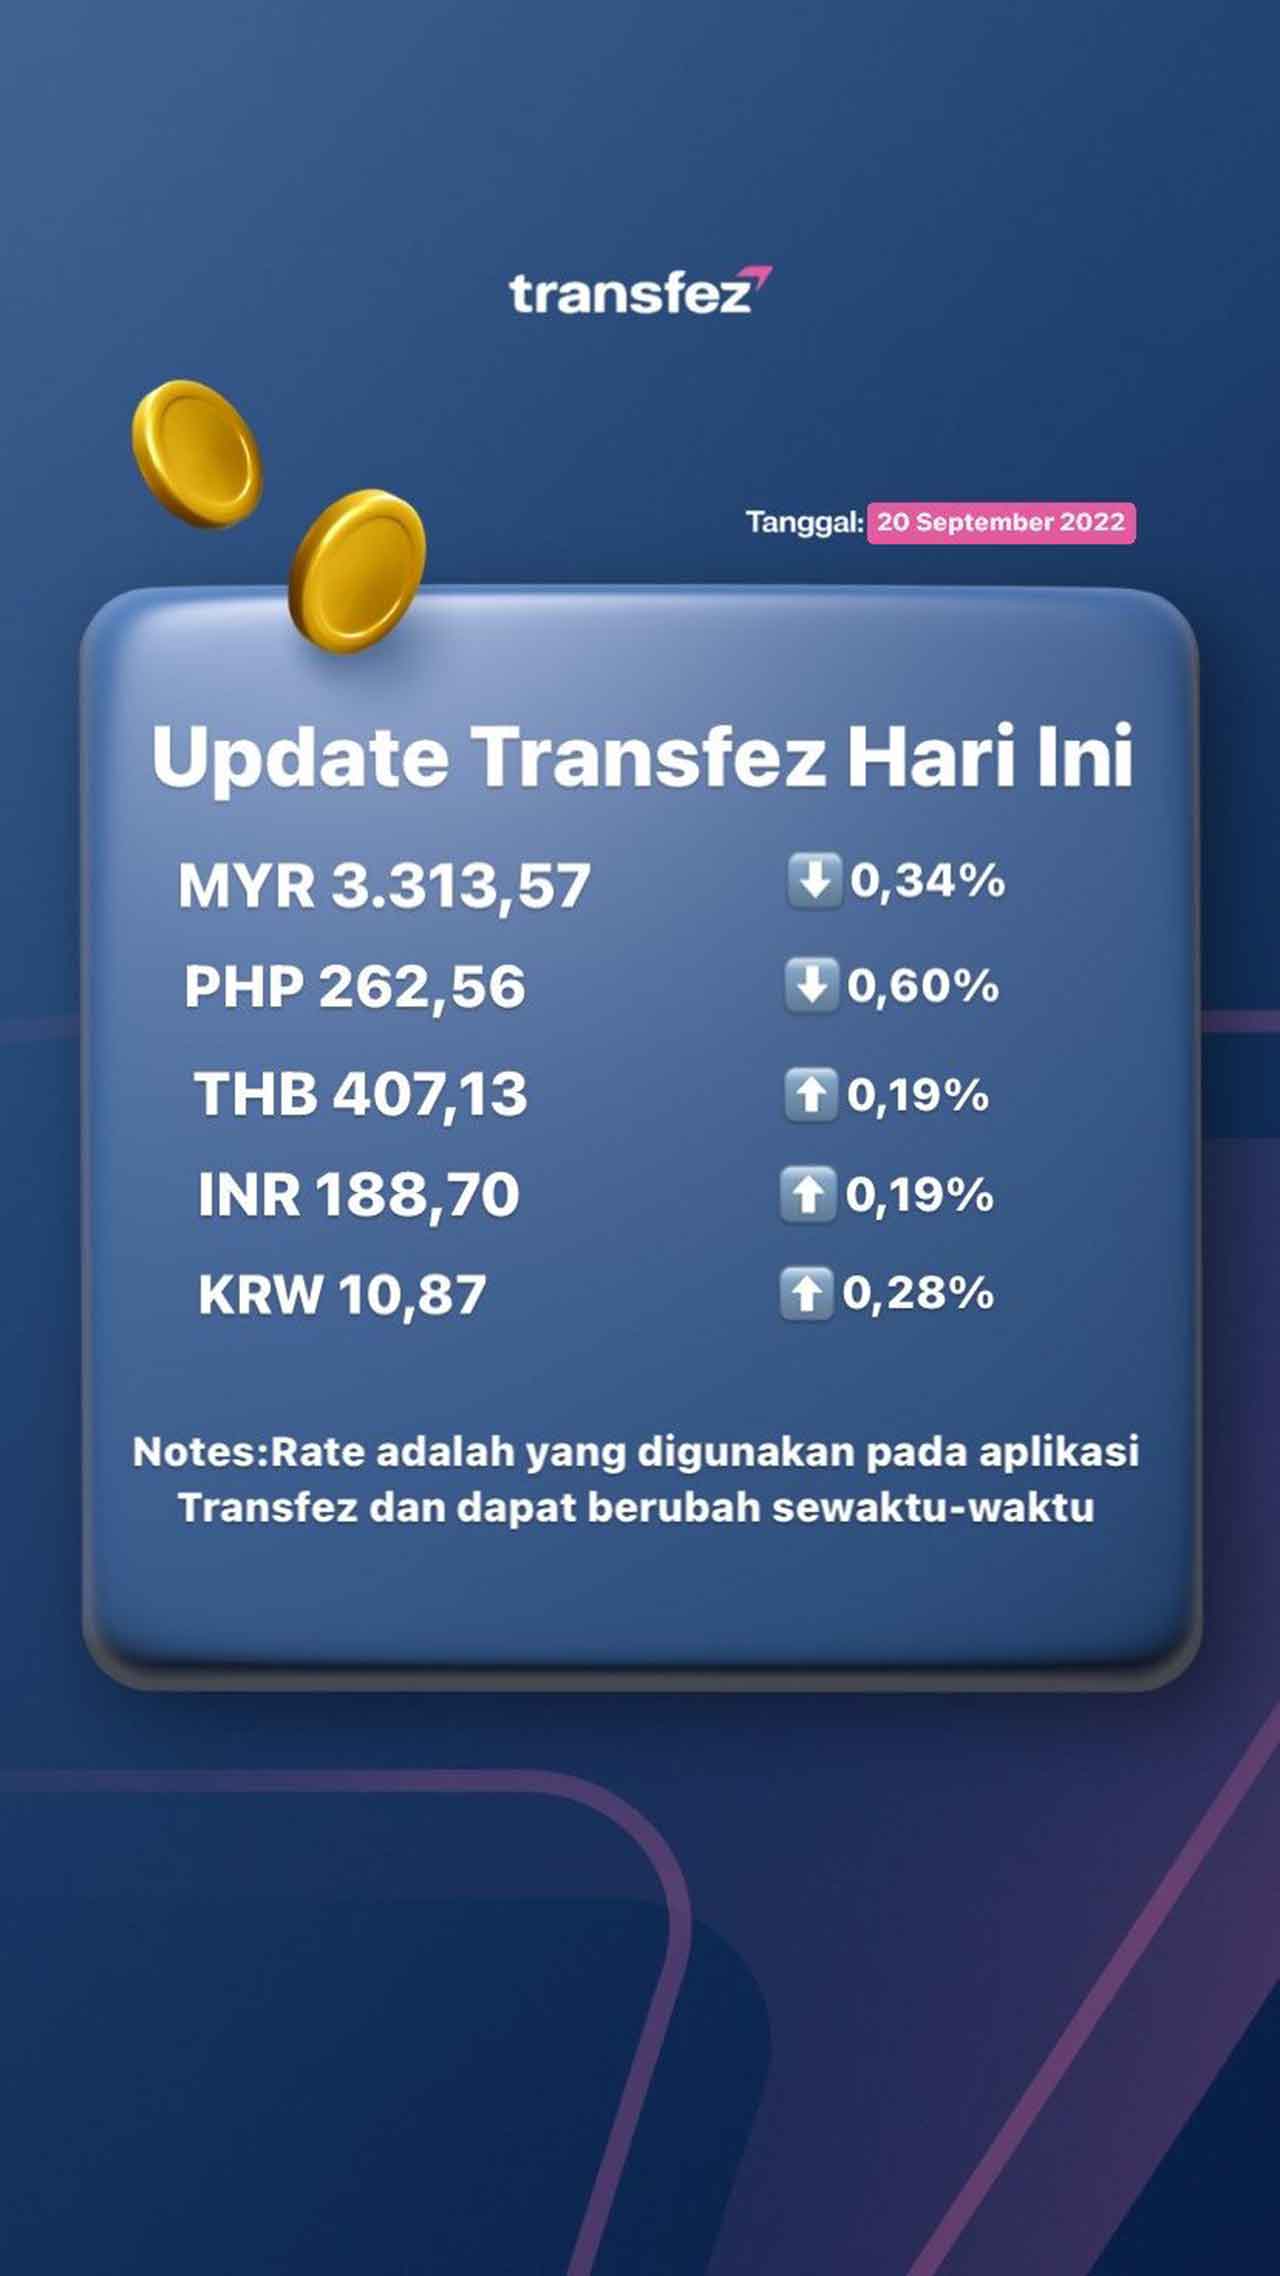 Update Rate Transfez Hari Ini 20 September 2022